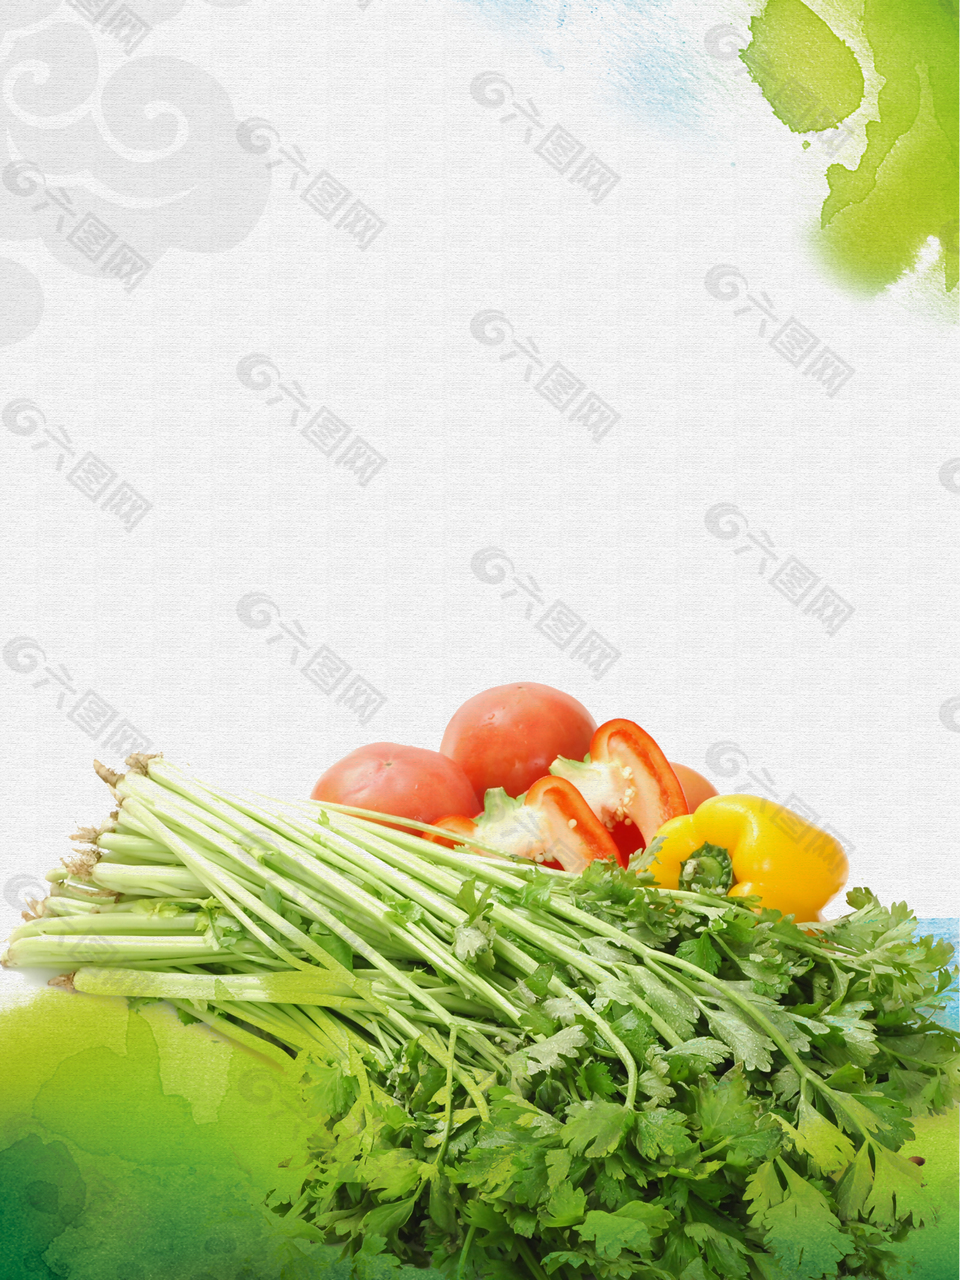 芹菜蔬菜超市特价背景